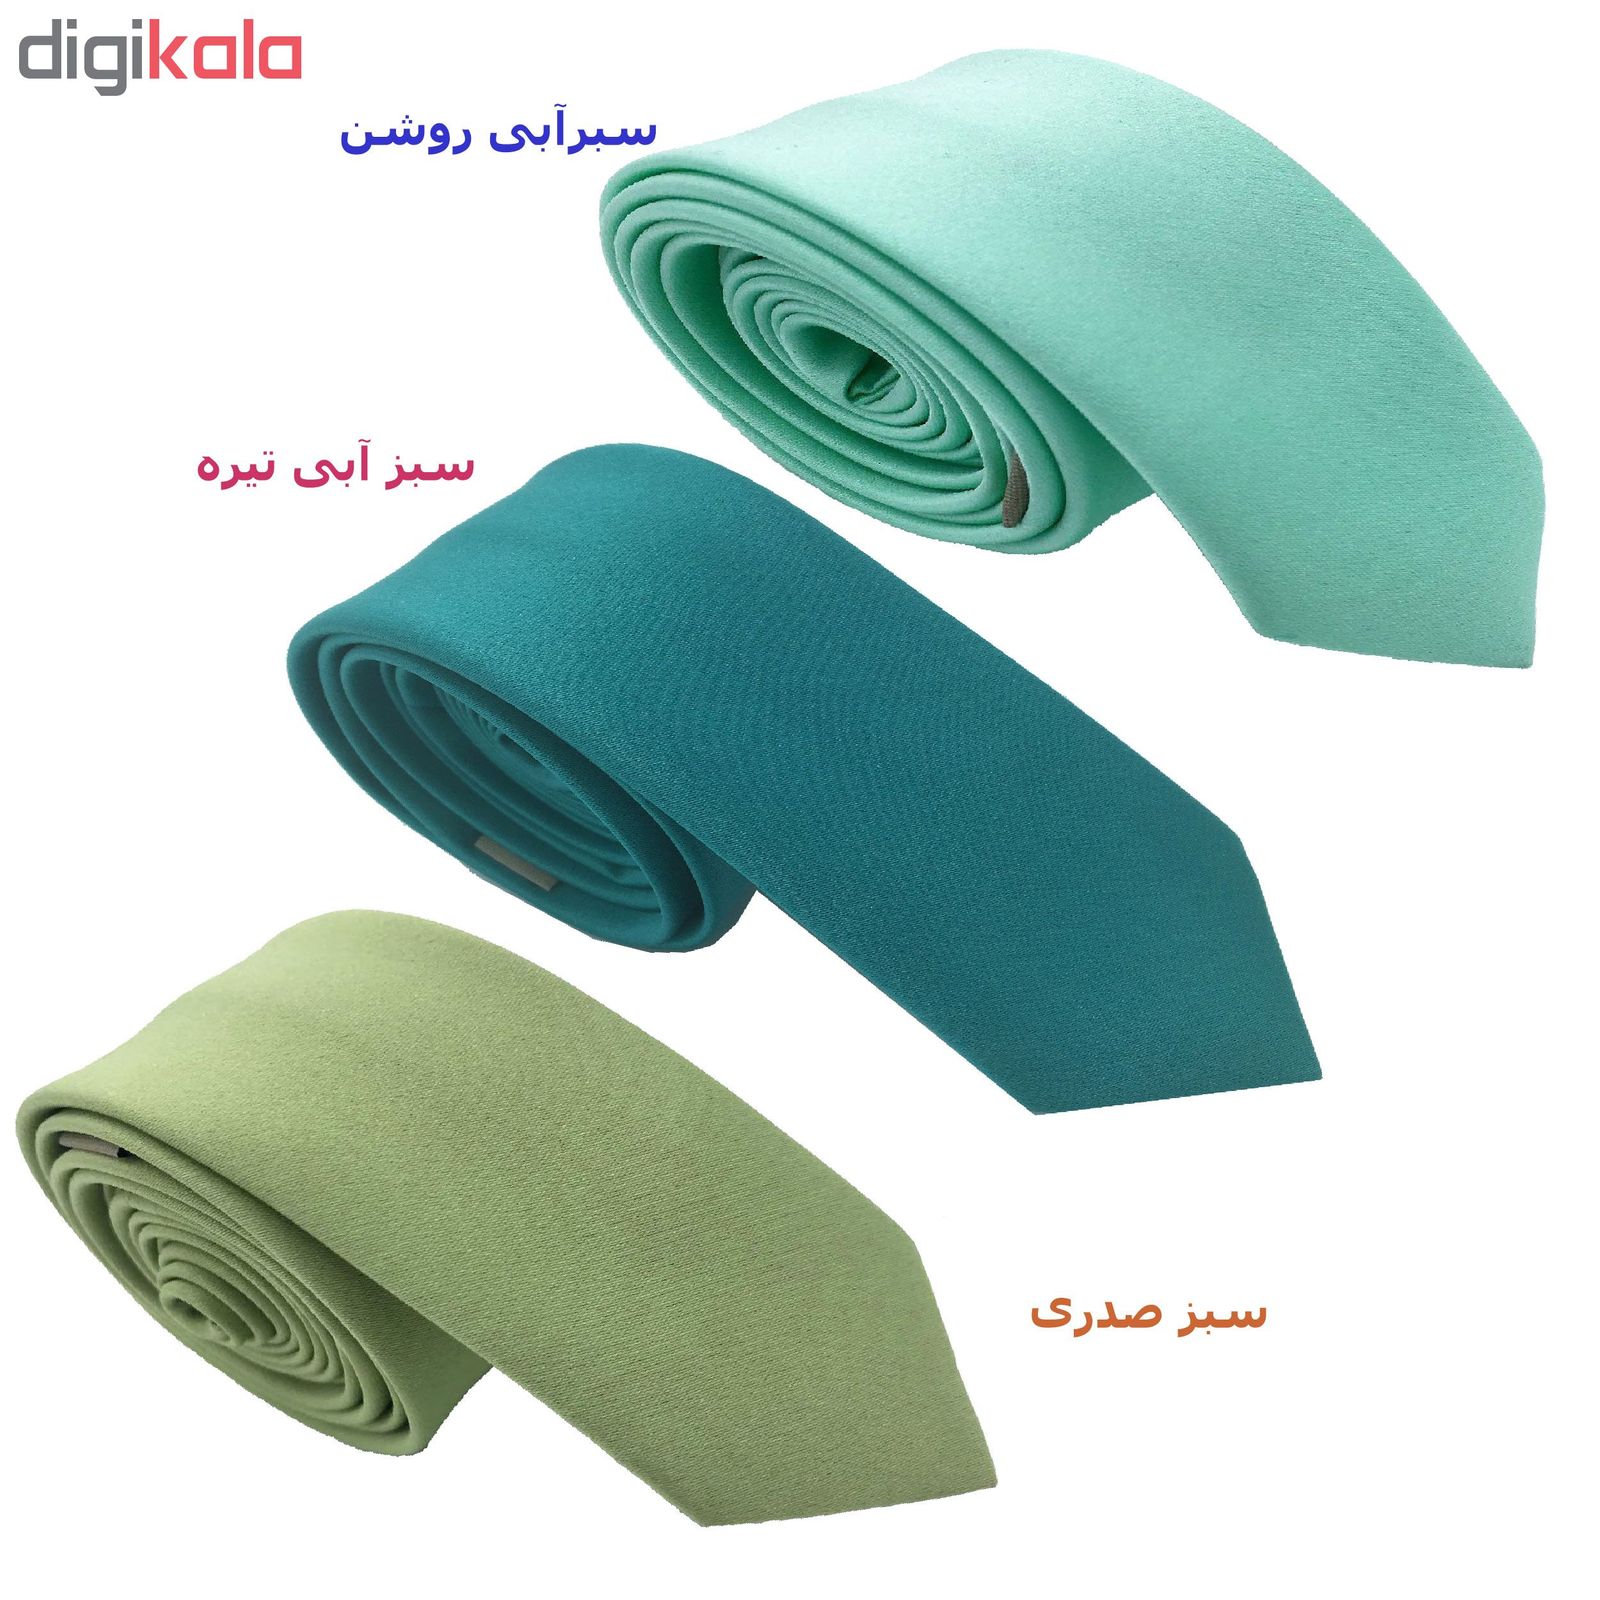 کراوات مردانه هکس ایران مدل OM-GRBLU مجموعه 3 عددی -  - 2